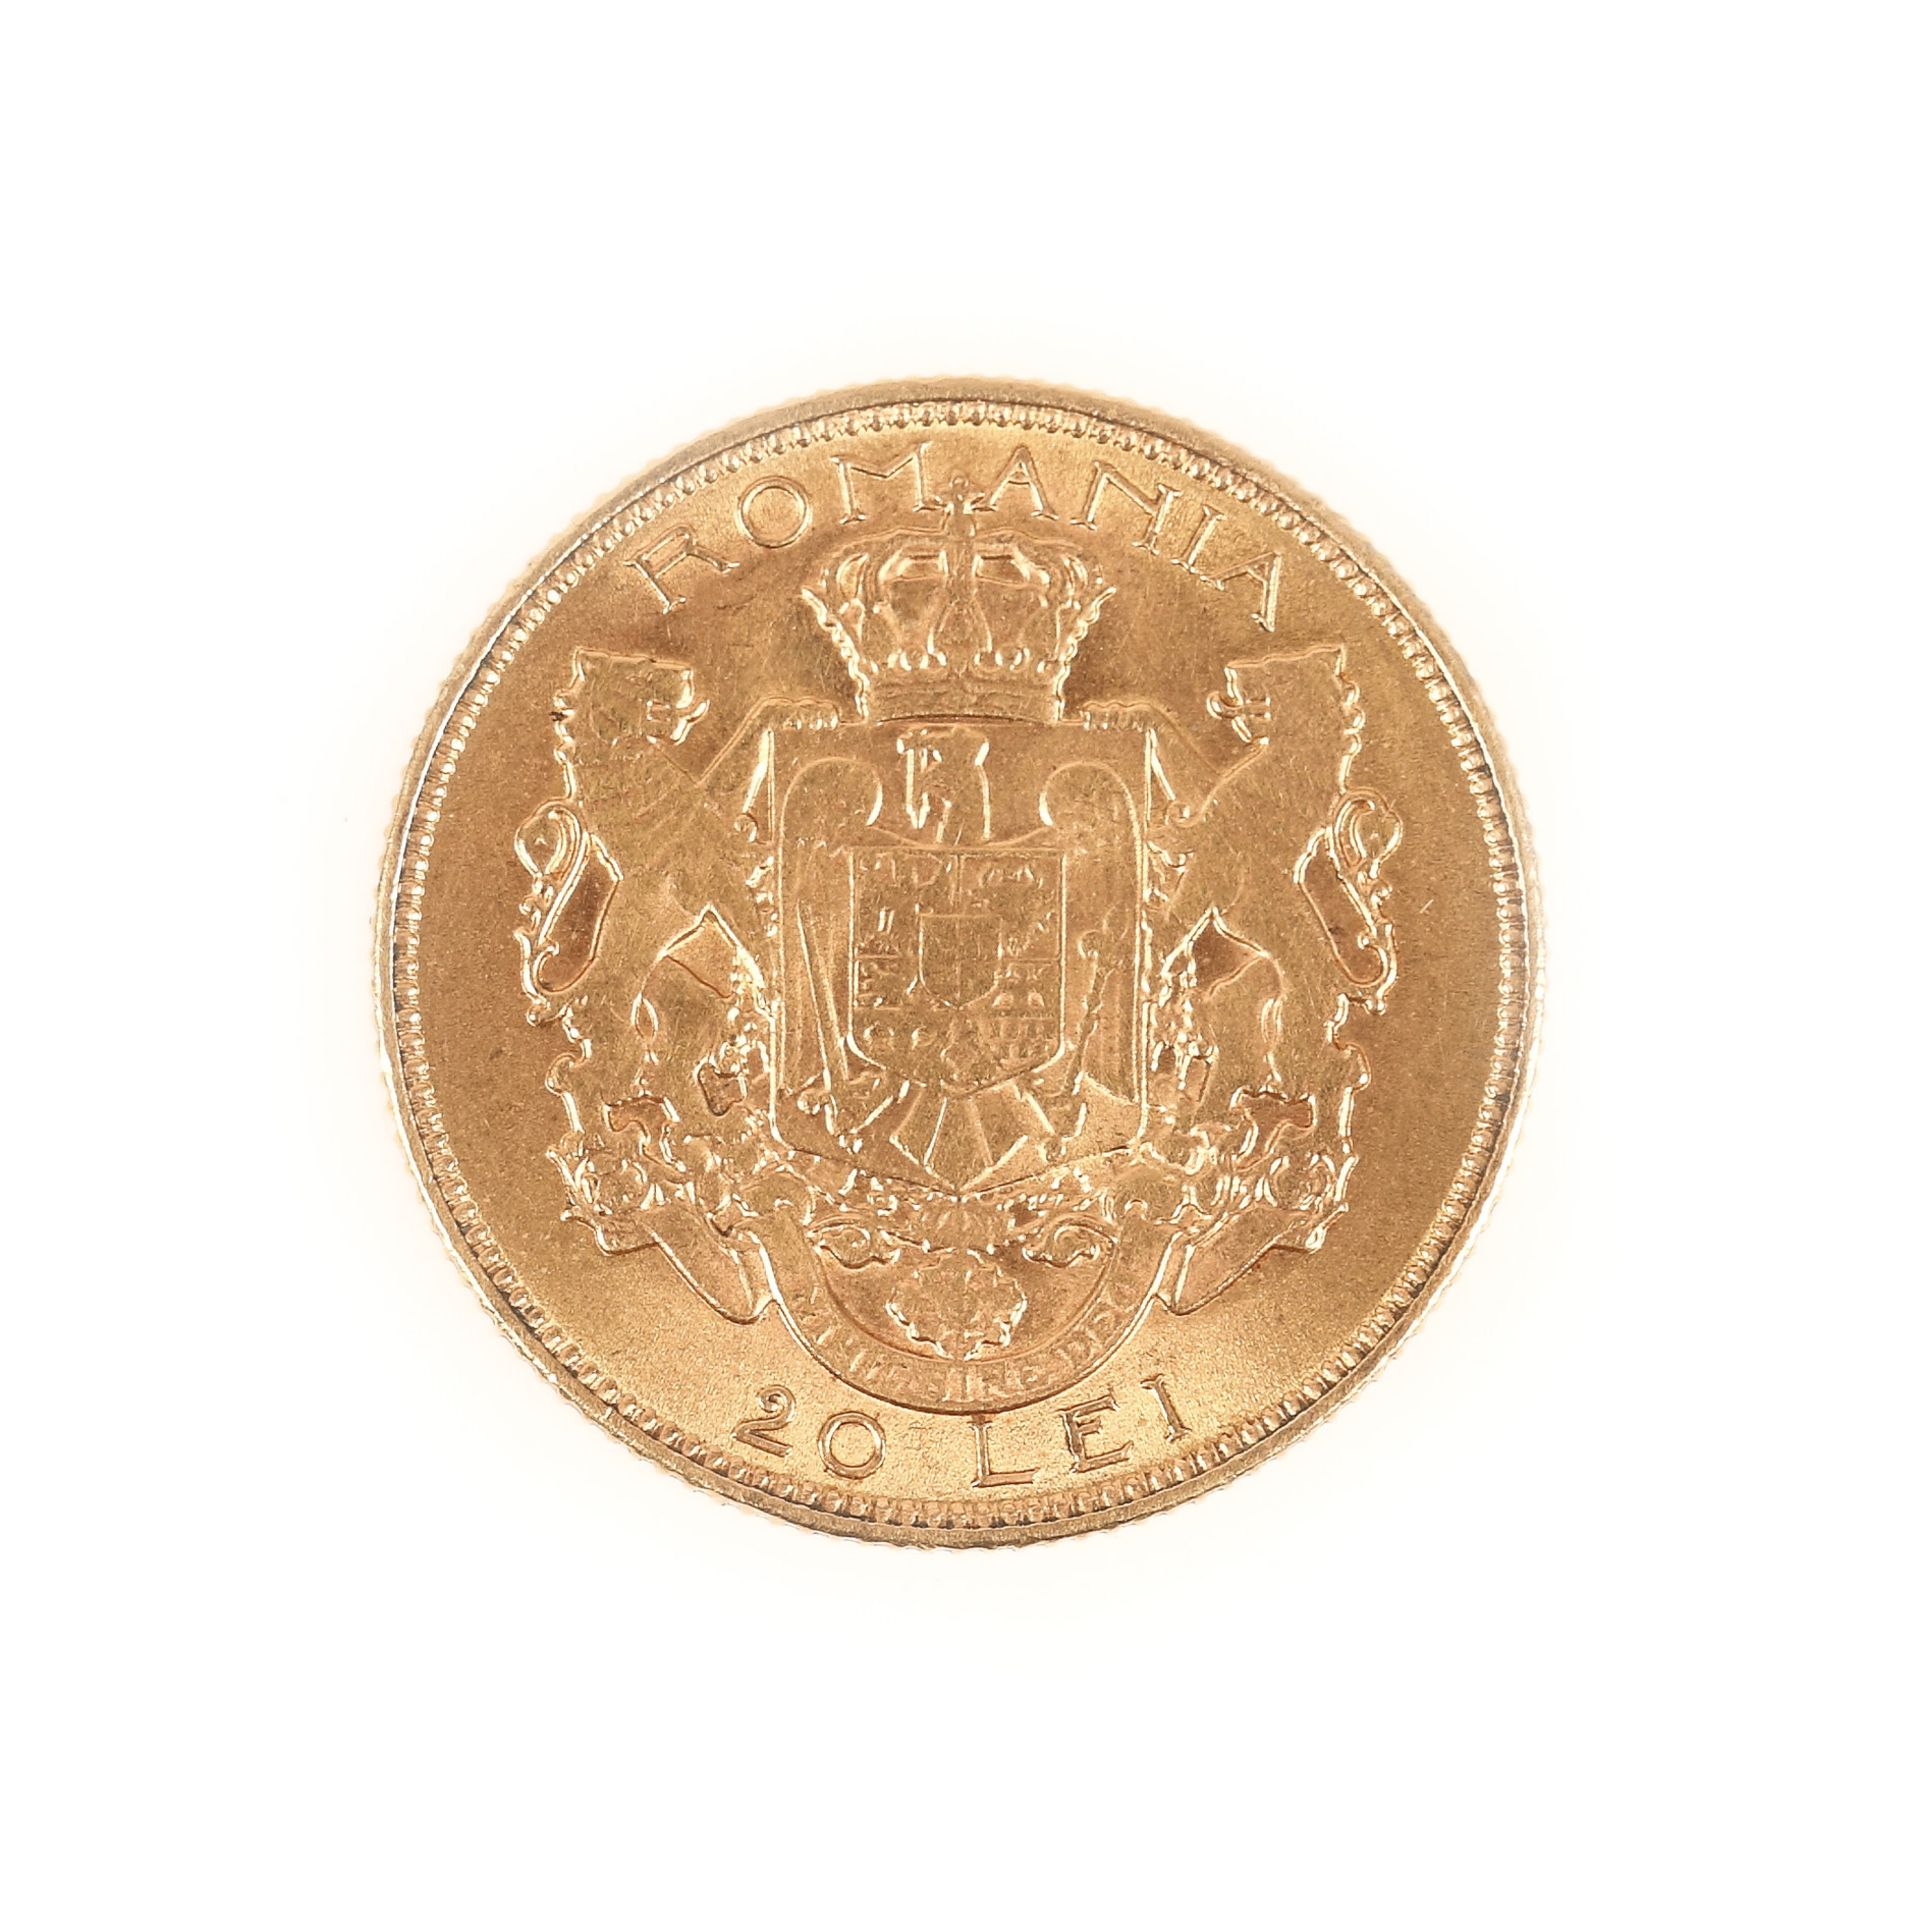 20 Lei 1922 coin, gold